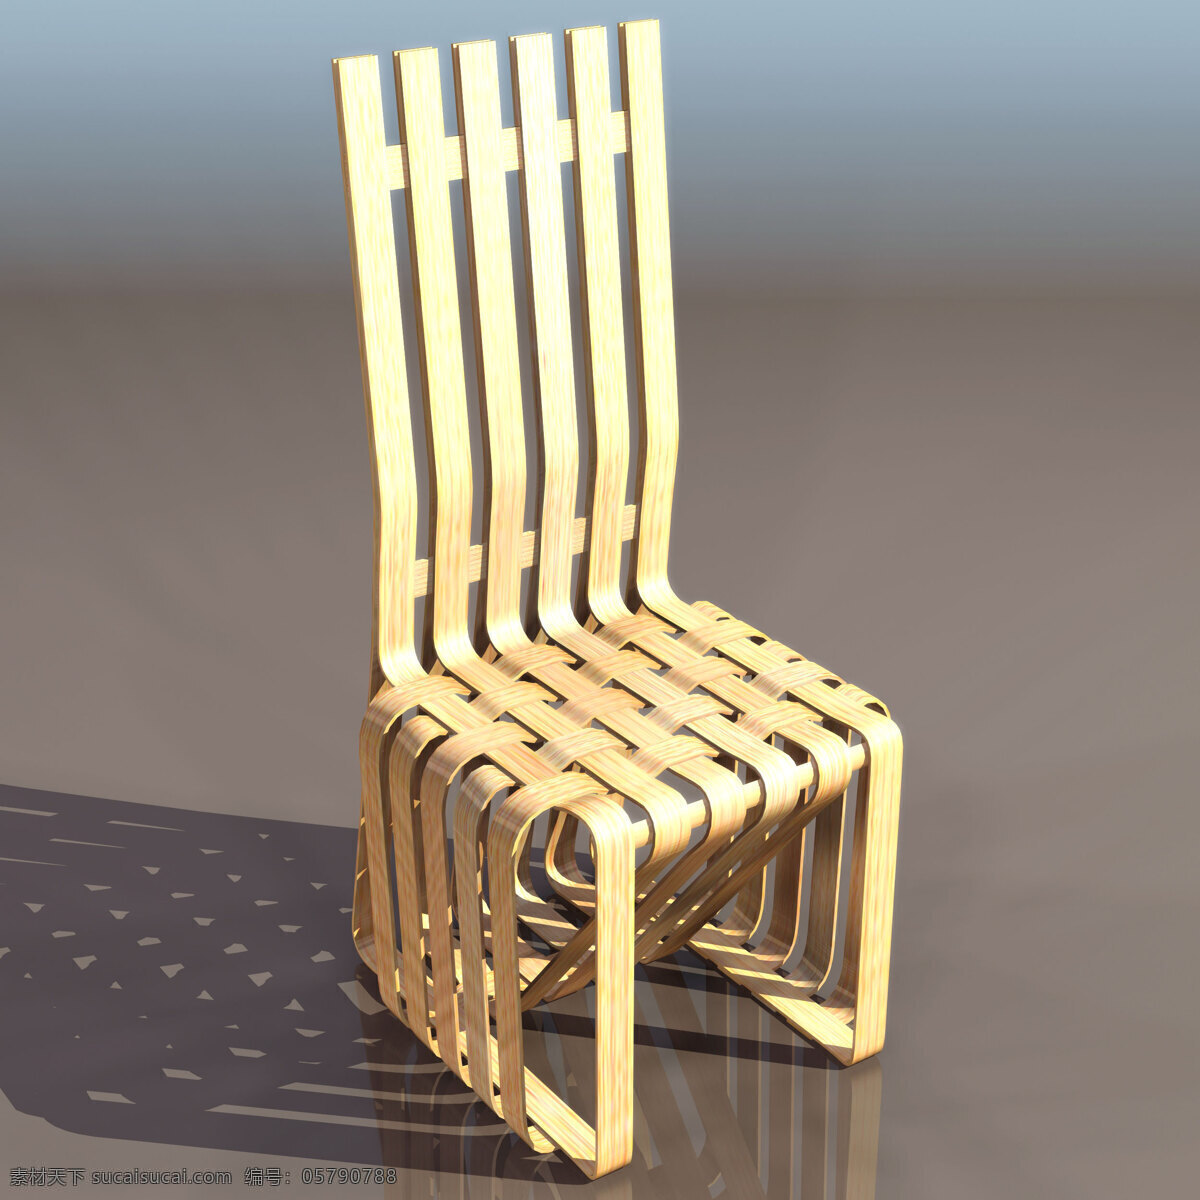 3d模型 3d设计模型 3d源文件 max 皮沙发 软包 沙发 室内模型 躺椅 椅子 坐垫 靠背 木椅 铁椅子 其他模型 源文件 3d模型素材 其他3d模型